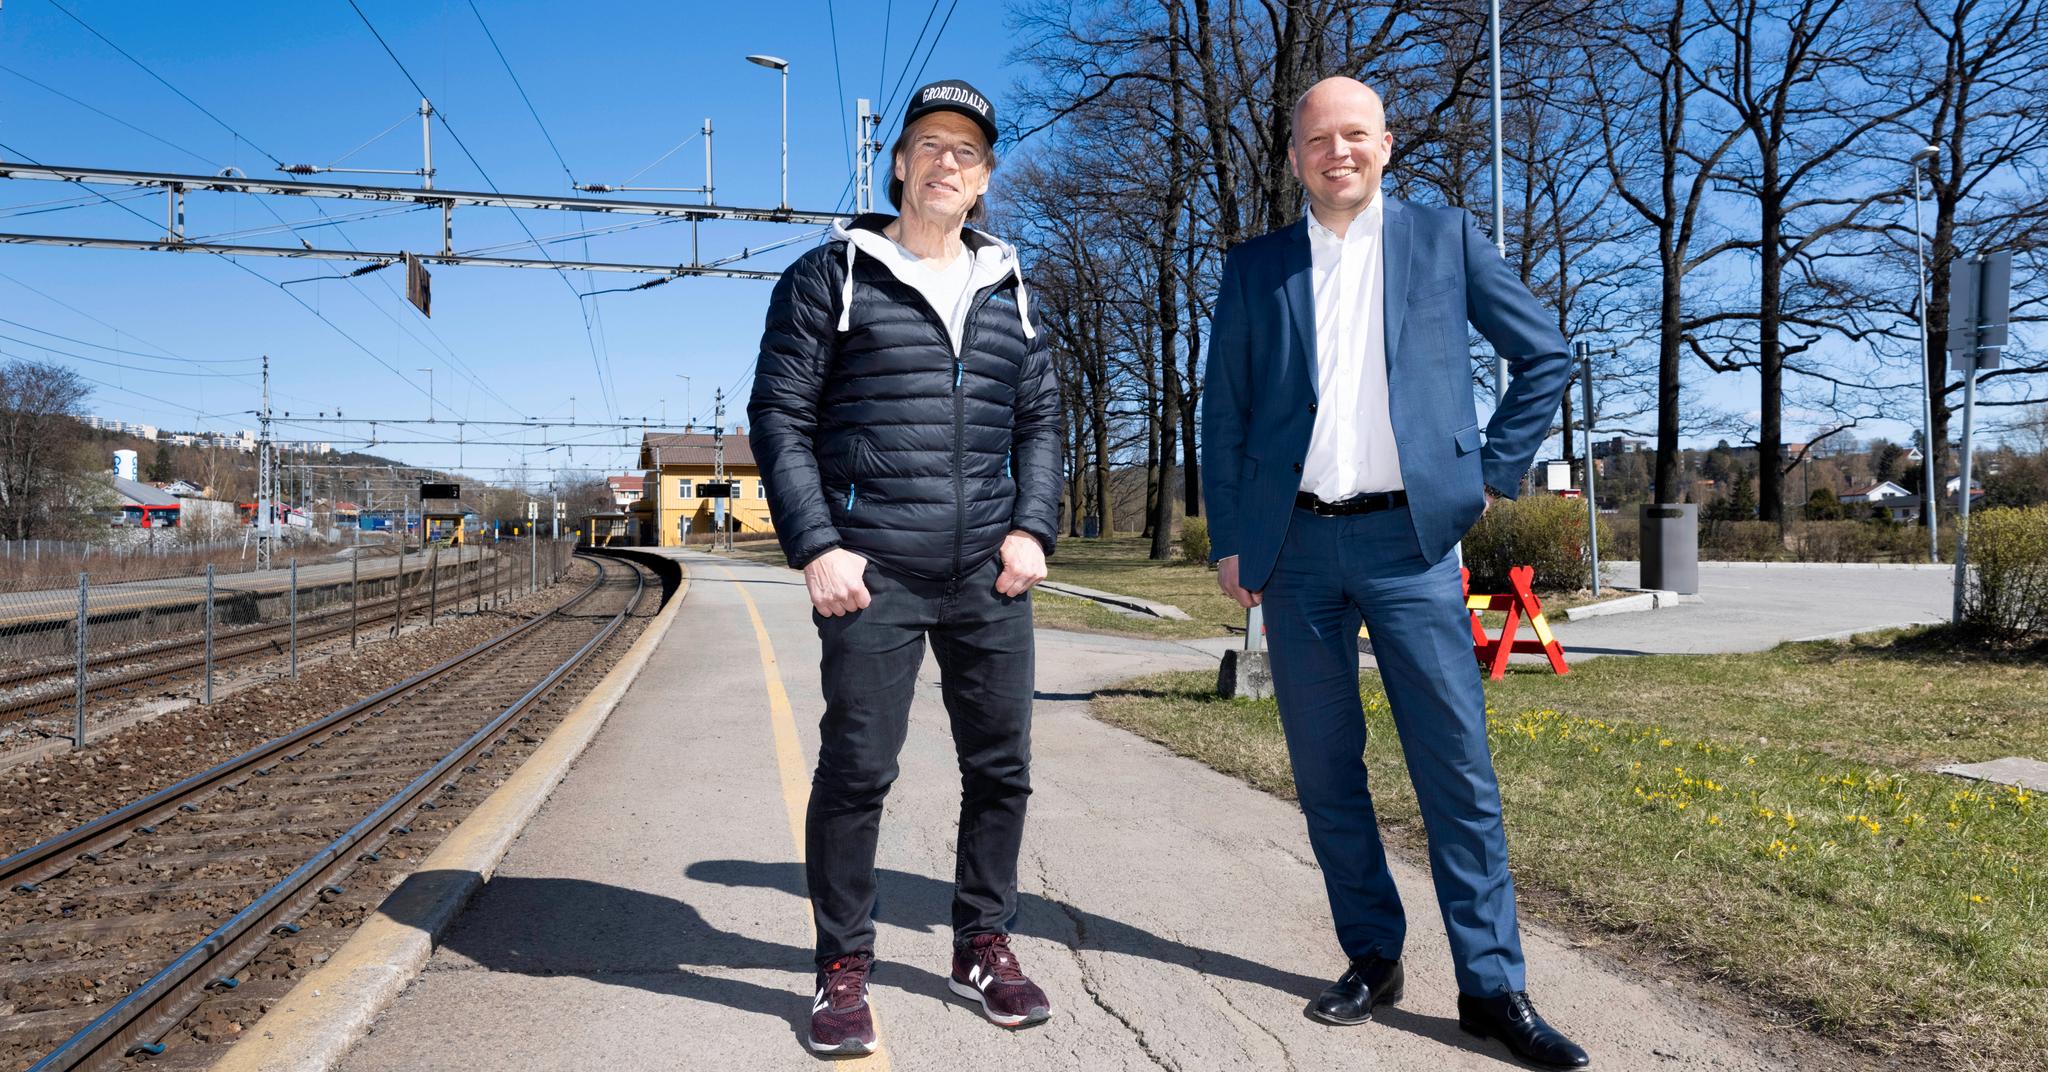 Sp-leder Trygve Slagsvold Vedum (til høyre) og hans nye partifelle Jan Bøhler lanserte Grorud stasjon som nytt NRK-hovedkvarter tidligere i vår. Nå har Vedum fått kritikk av byrådsleder Raymond Johansen (Ap) for å være lettvint.